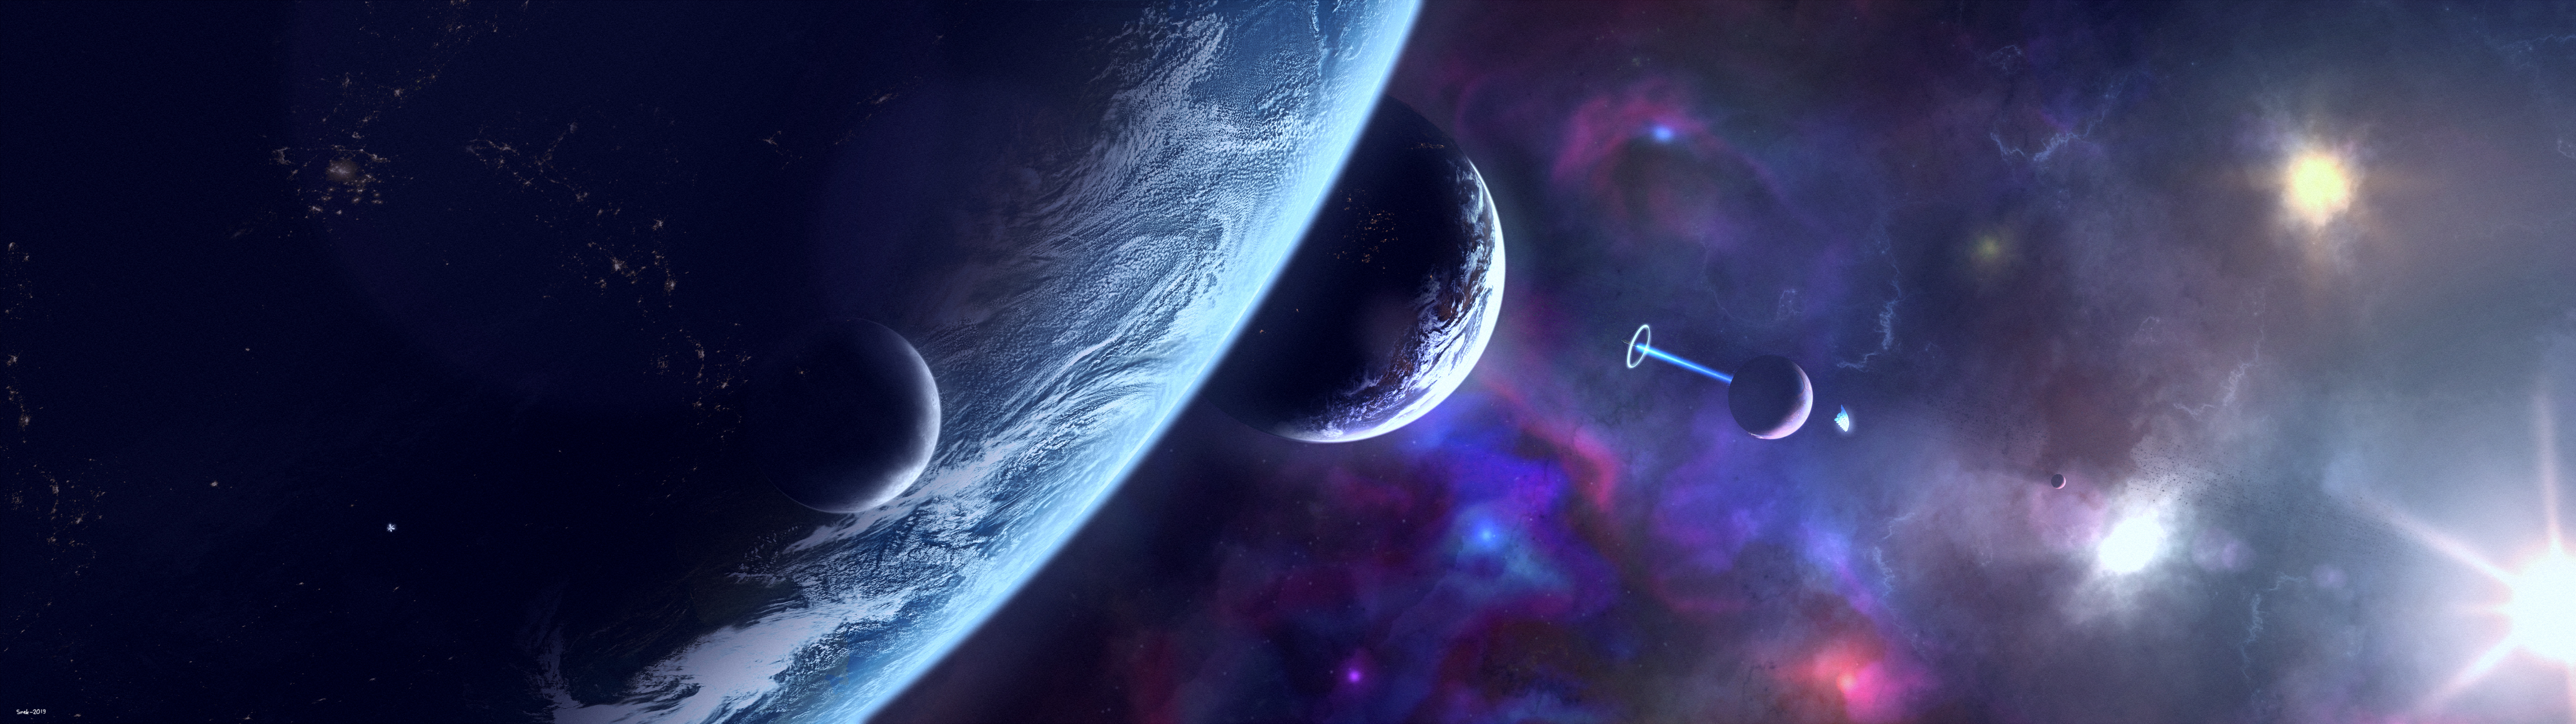 Скачать обои бесплатно Планеты, Космос, Планета, Научная Фантастика картинка на рабочий стол ПК